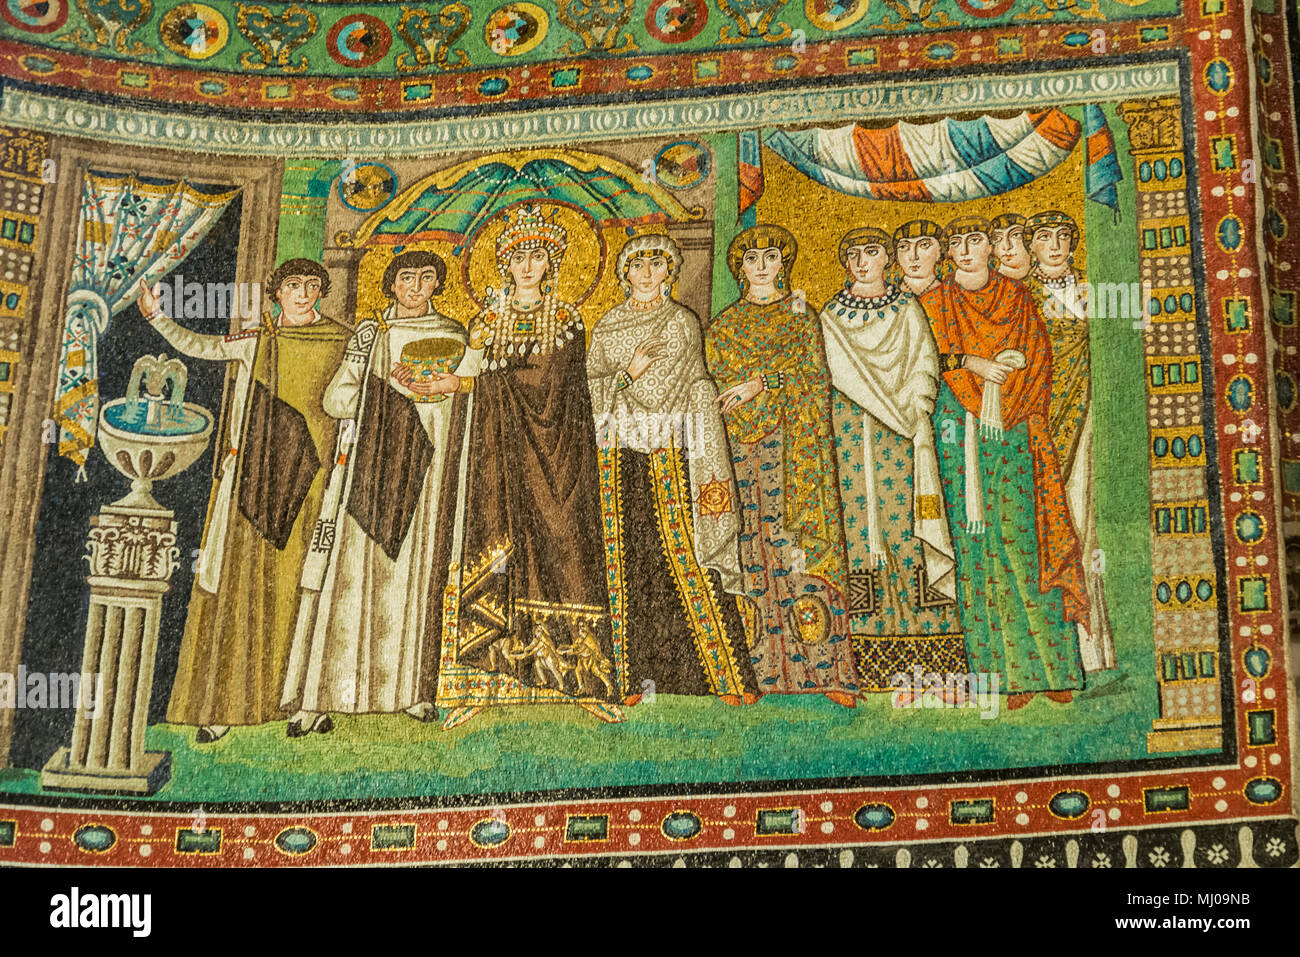 Mosaico en el interior de famosa Basílica de San Vitale, uno de los más importantes ejemplos de arte bizantino cristiano temprano en Europa occidental, en Ravenna, volver de stock -